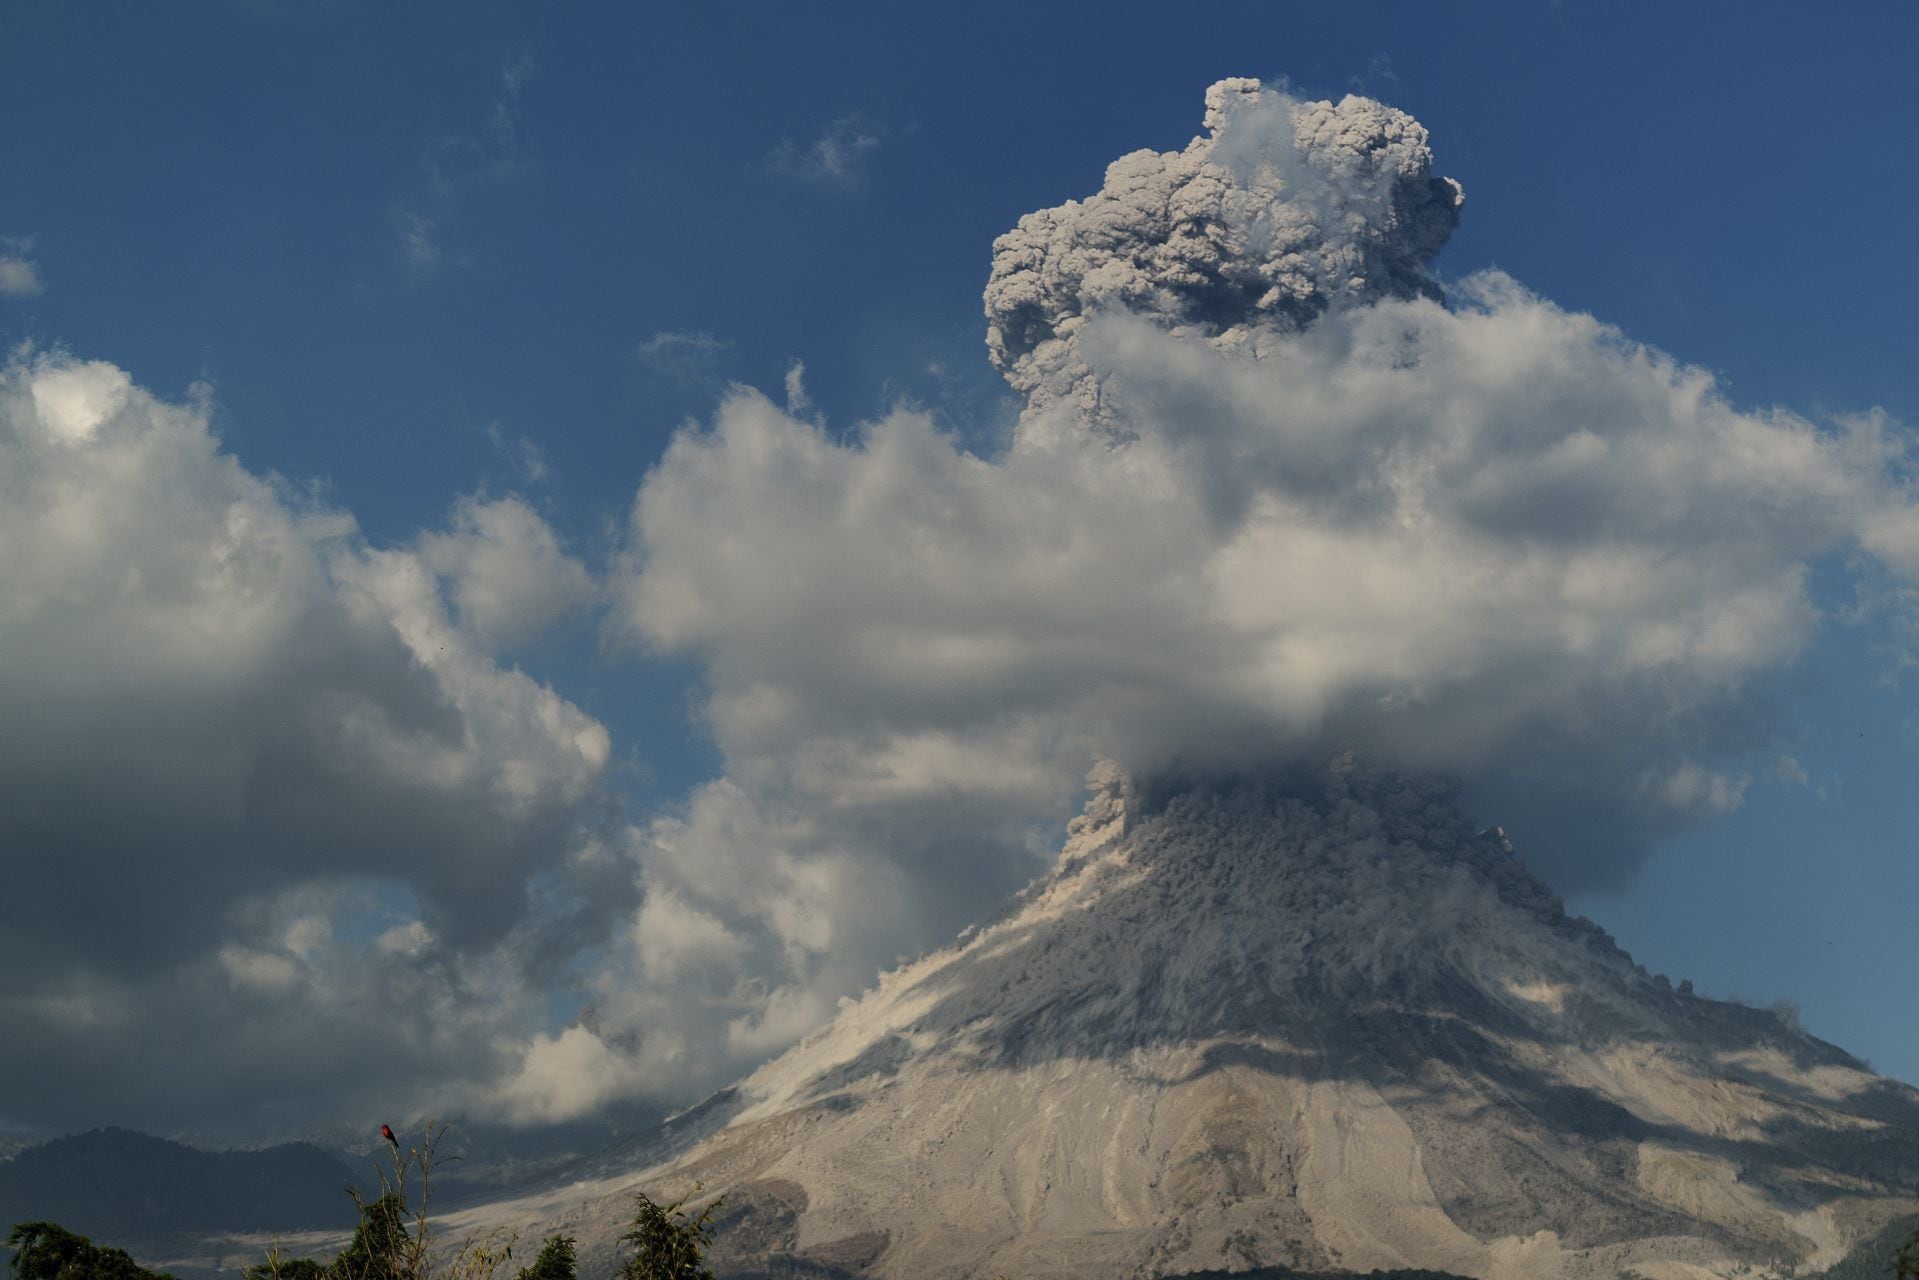 El Volcán de Colima, también llamado Volcán de Fuego, se eleva majestuosamente en el paisaje mexicano.(Cuartoscuro)